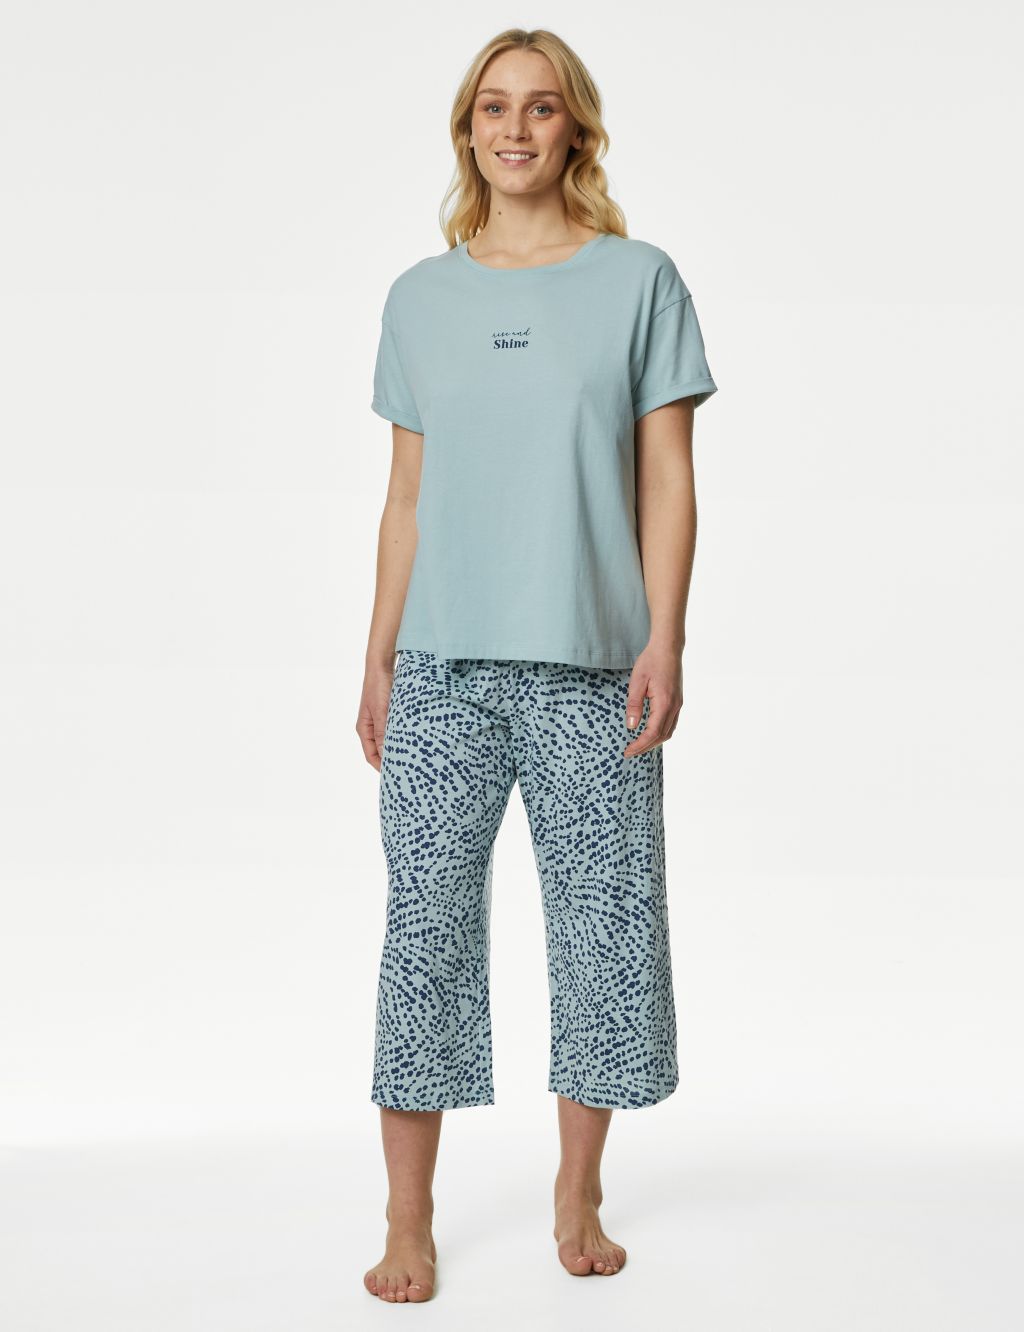 Pajama Camisole Top and Shorts - Cream/roses - Ladies